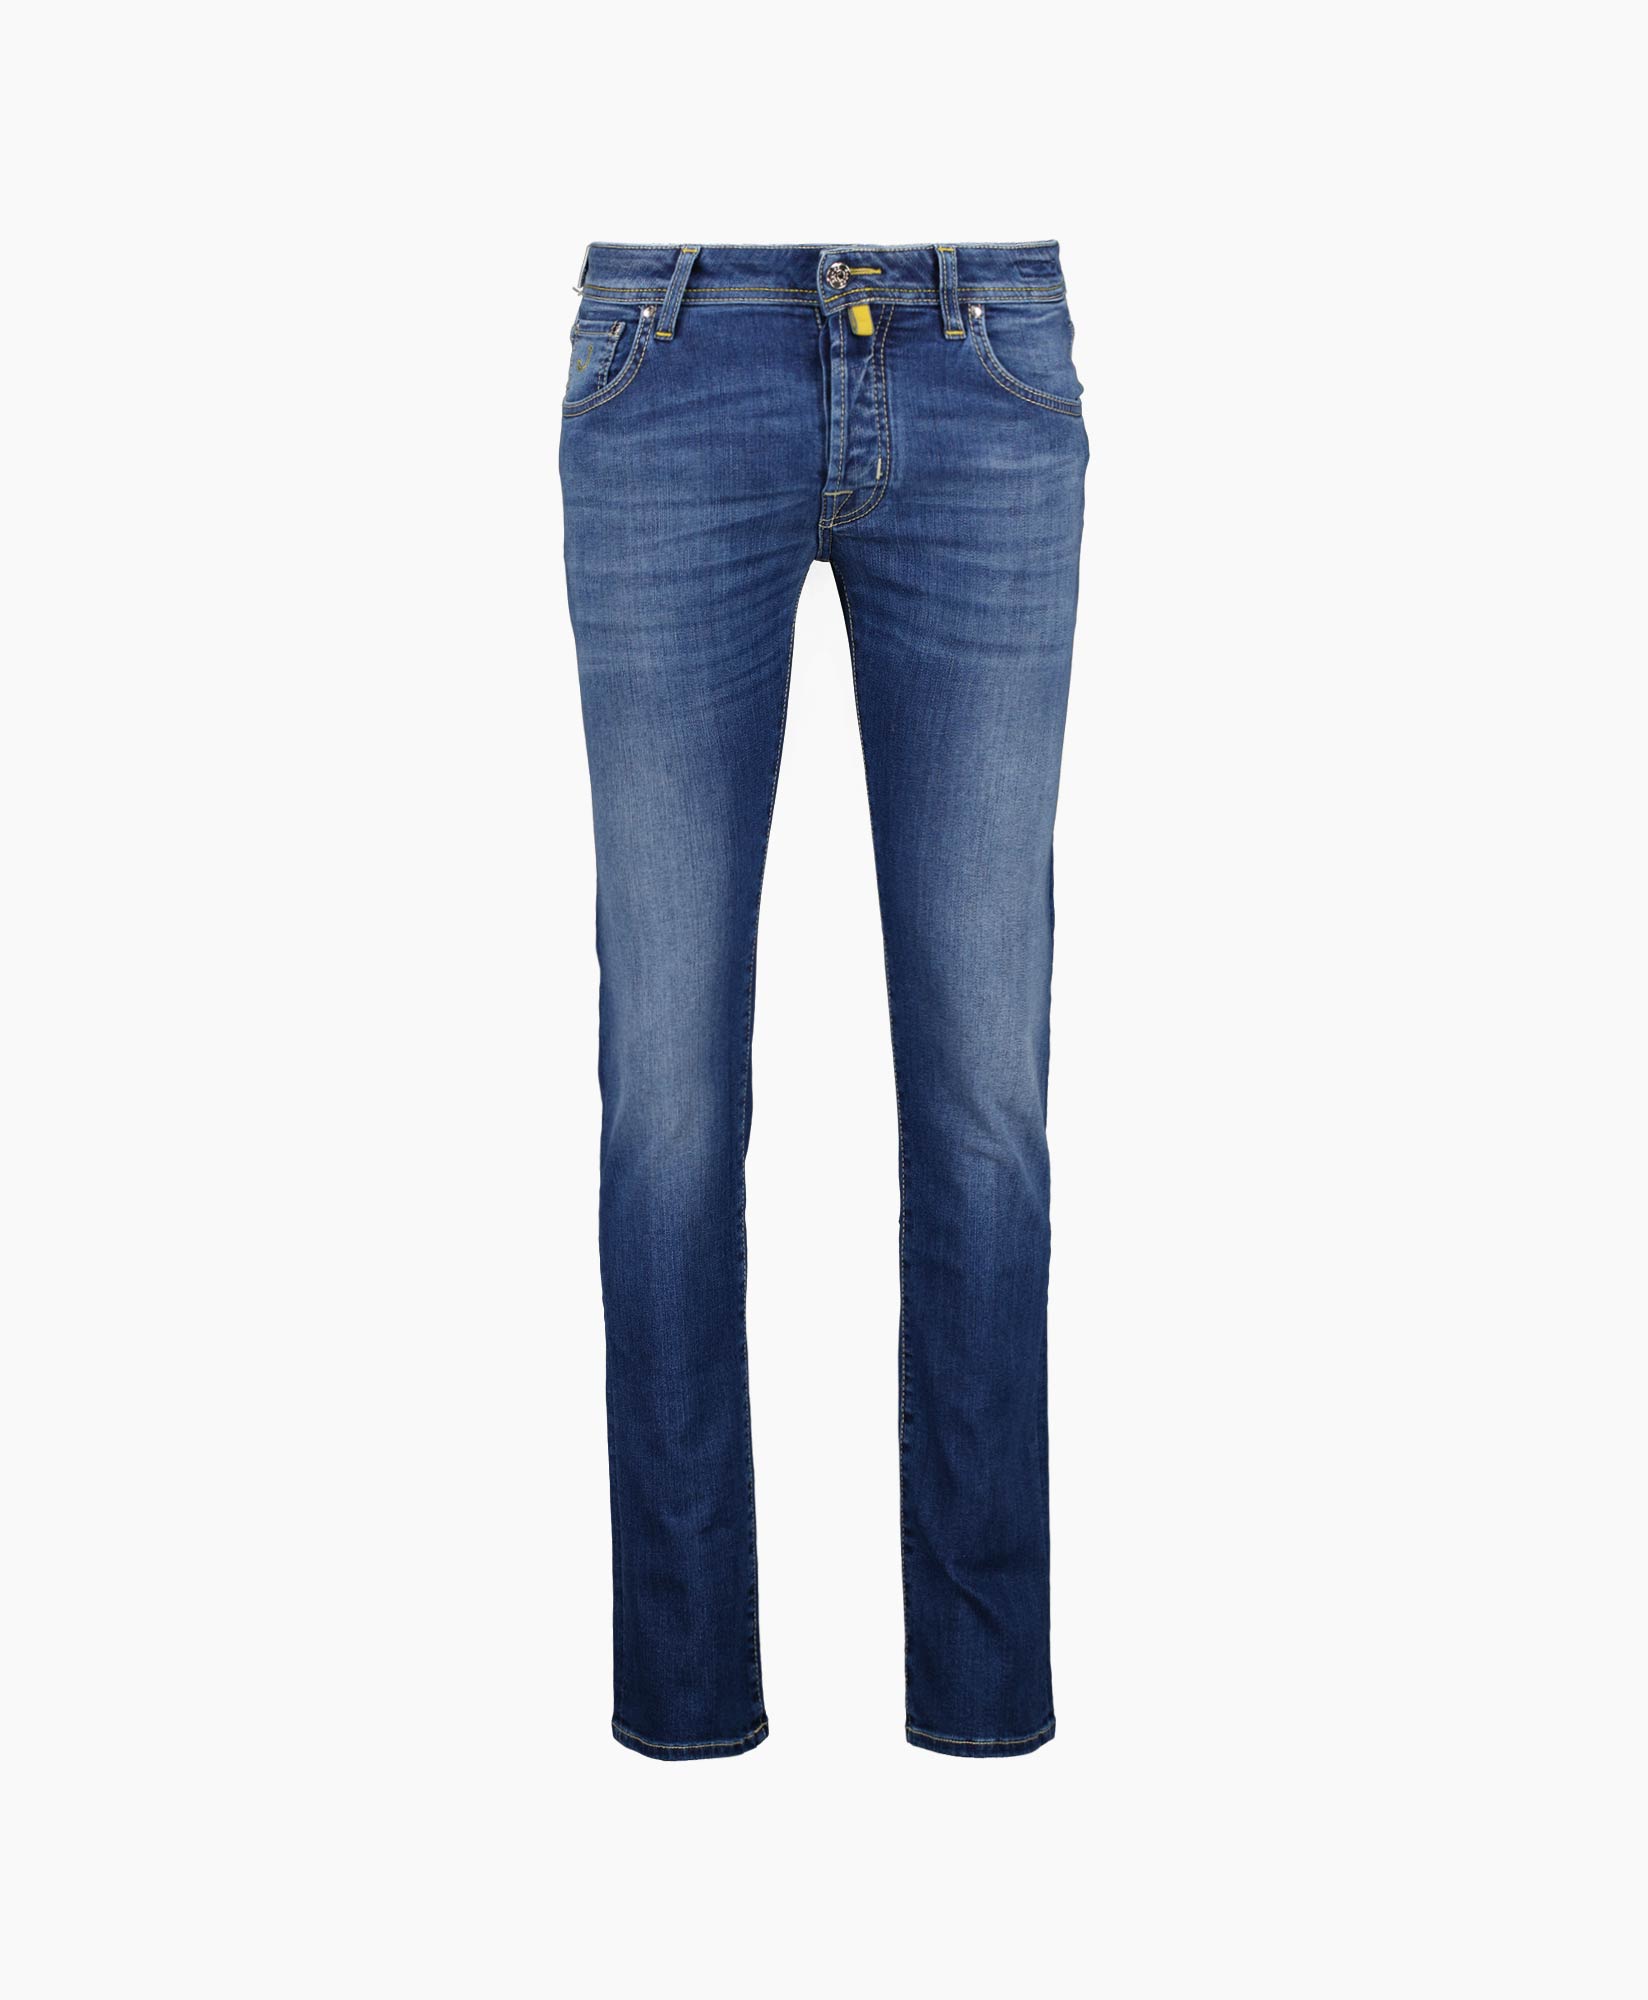 Jacob Cohen Jeans Pant 5 Pkt Slim Fit Nick Blauw